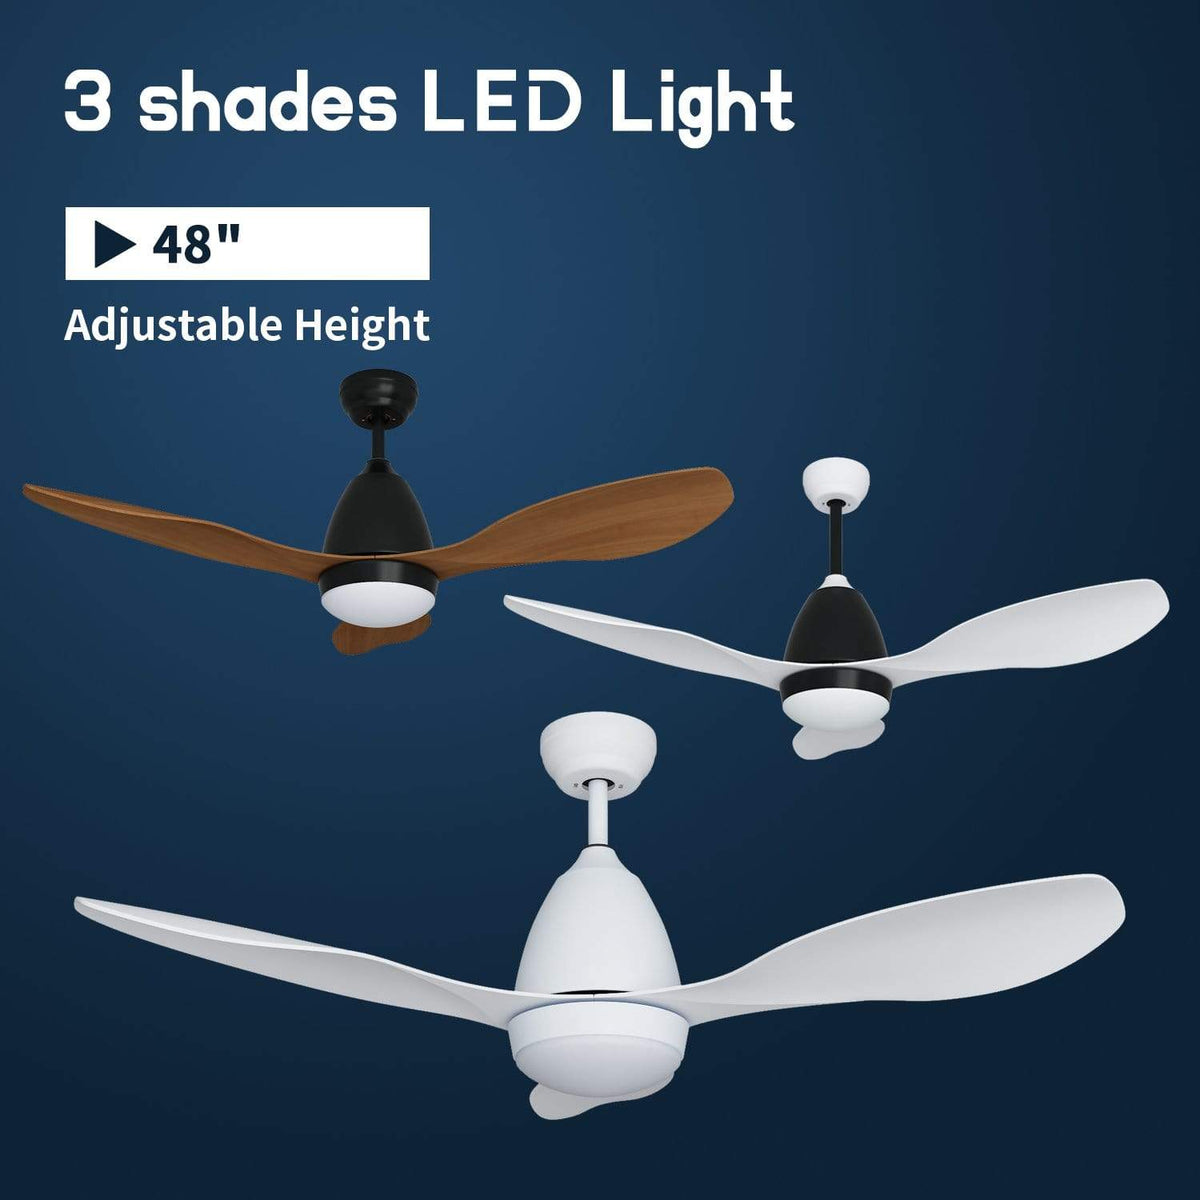 48" 1200mm Ceiling Fan DC 3 Blades With Color Change LED Light & Remote Control - Elegantshowers